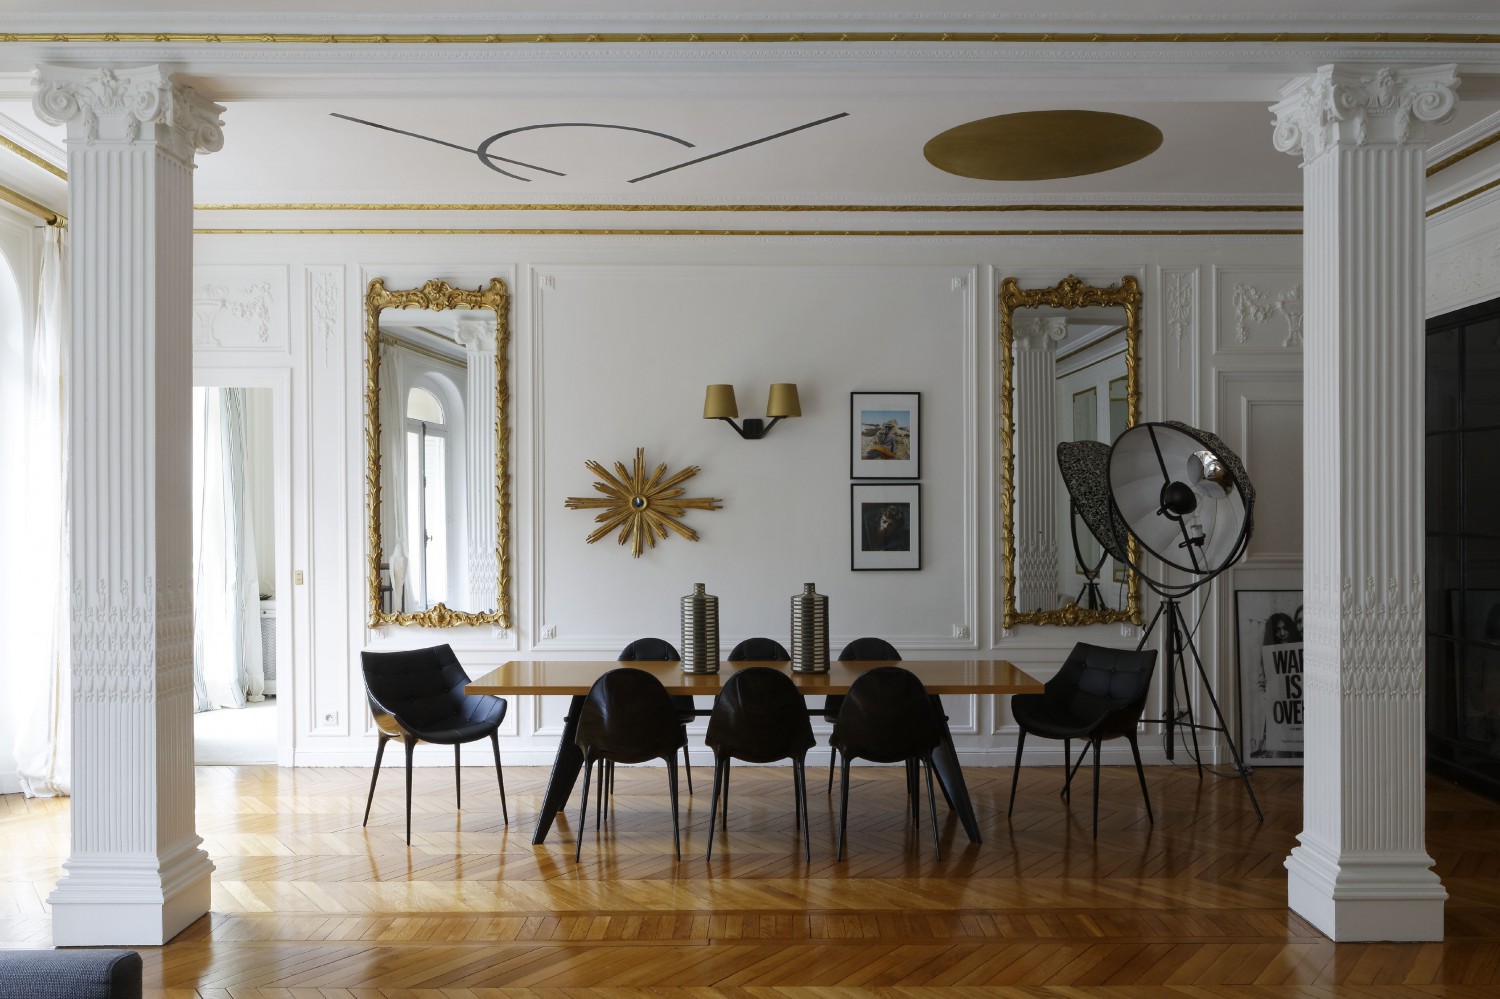 Kara Molinari, architecte d'intérieur || Une touche d'or en décoration